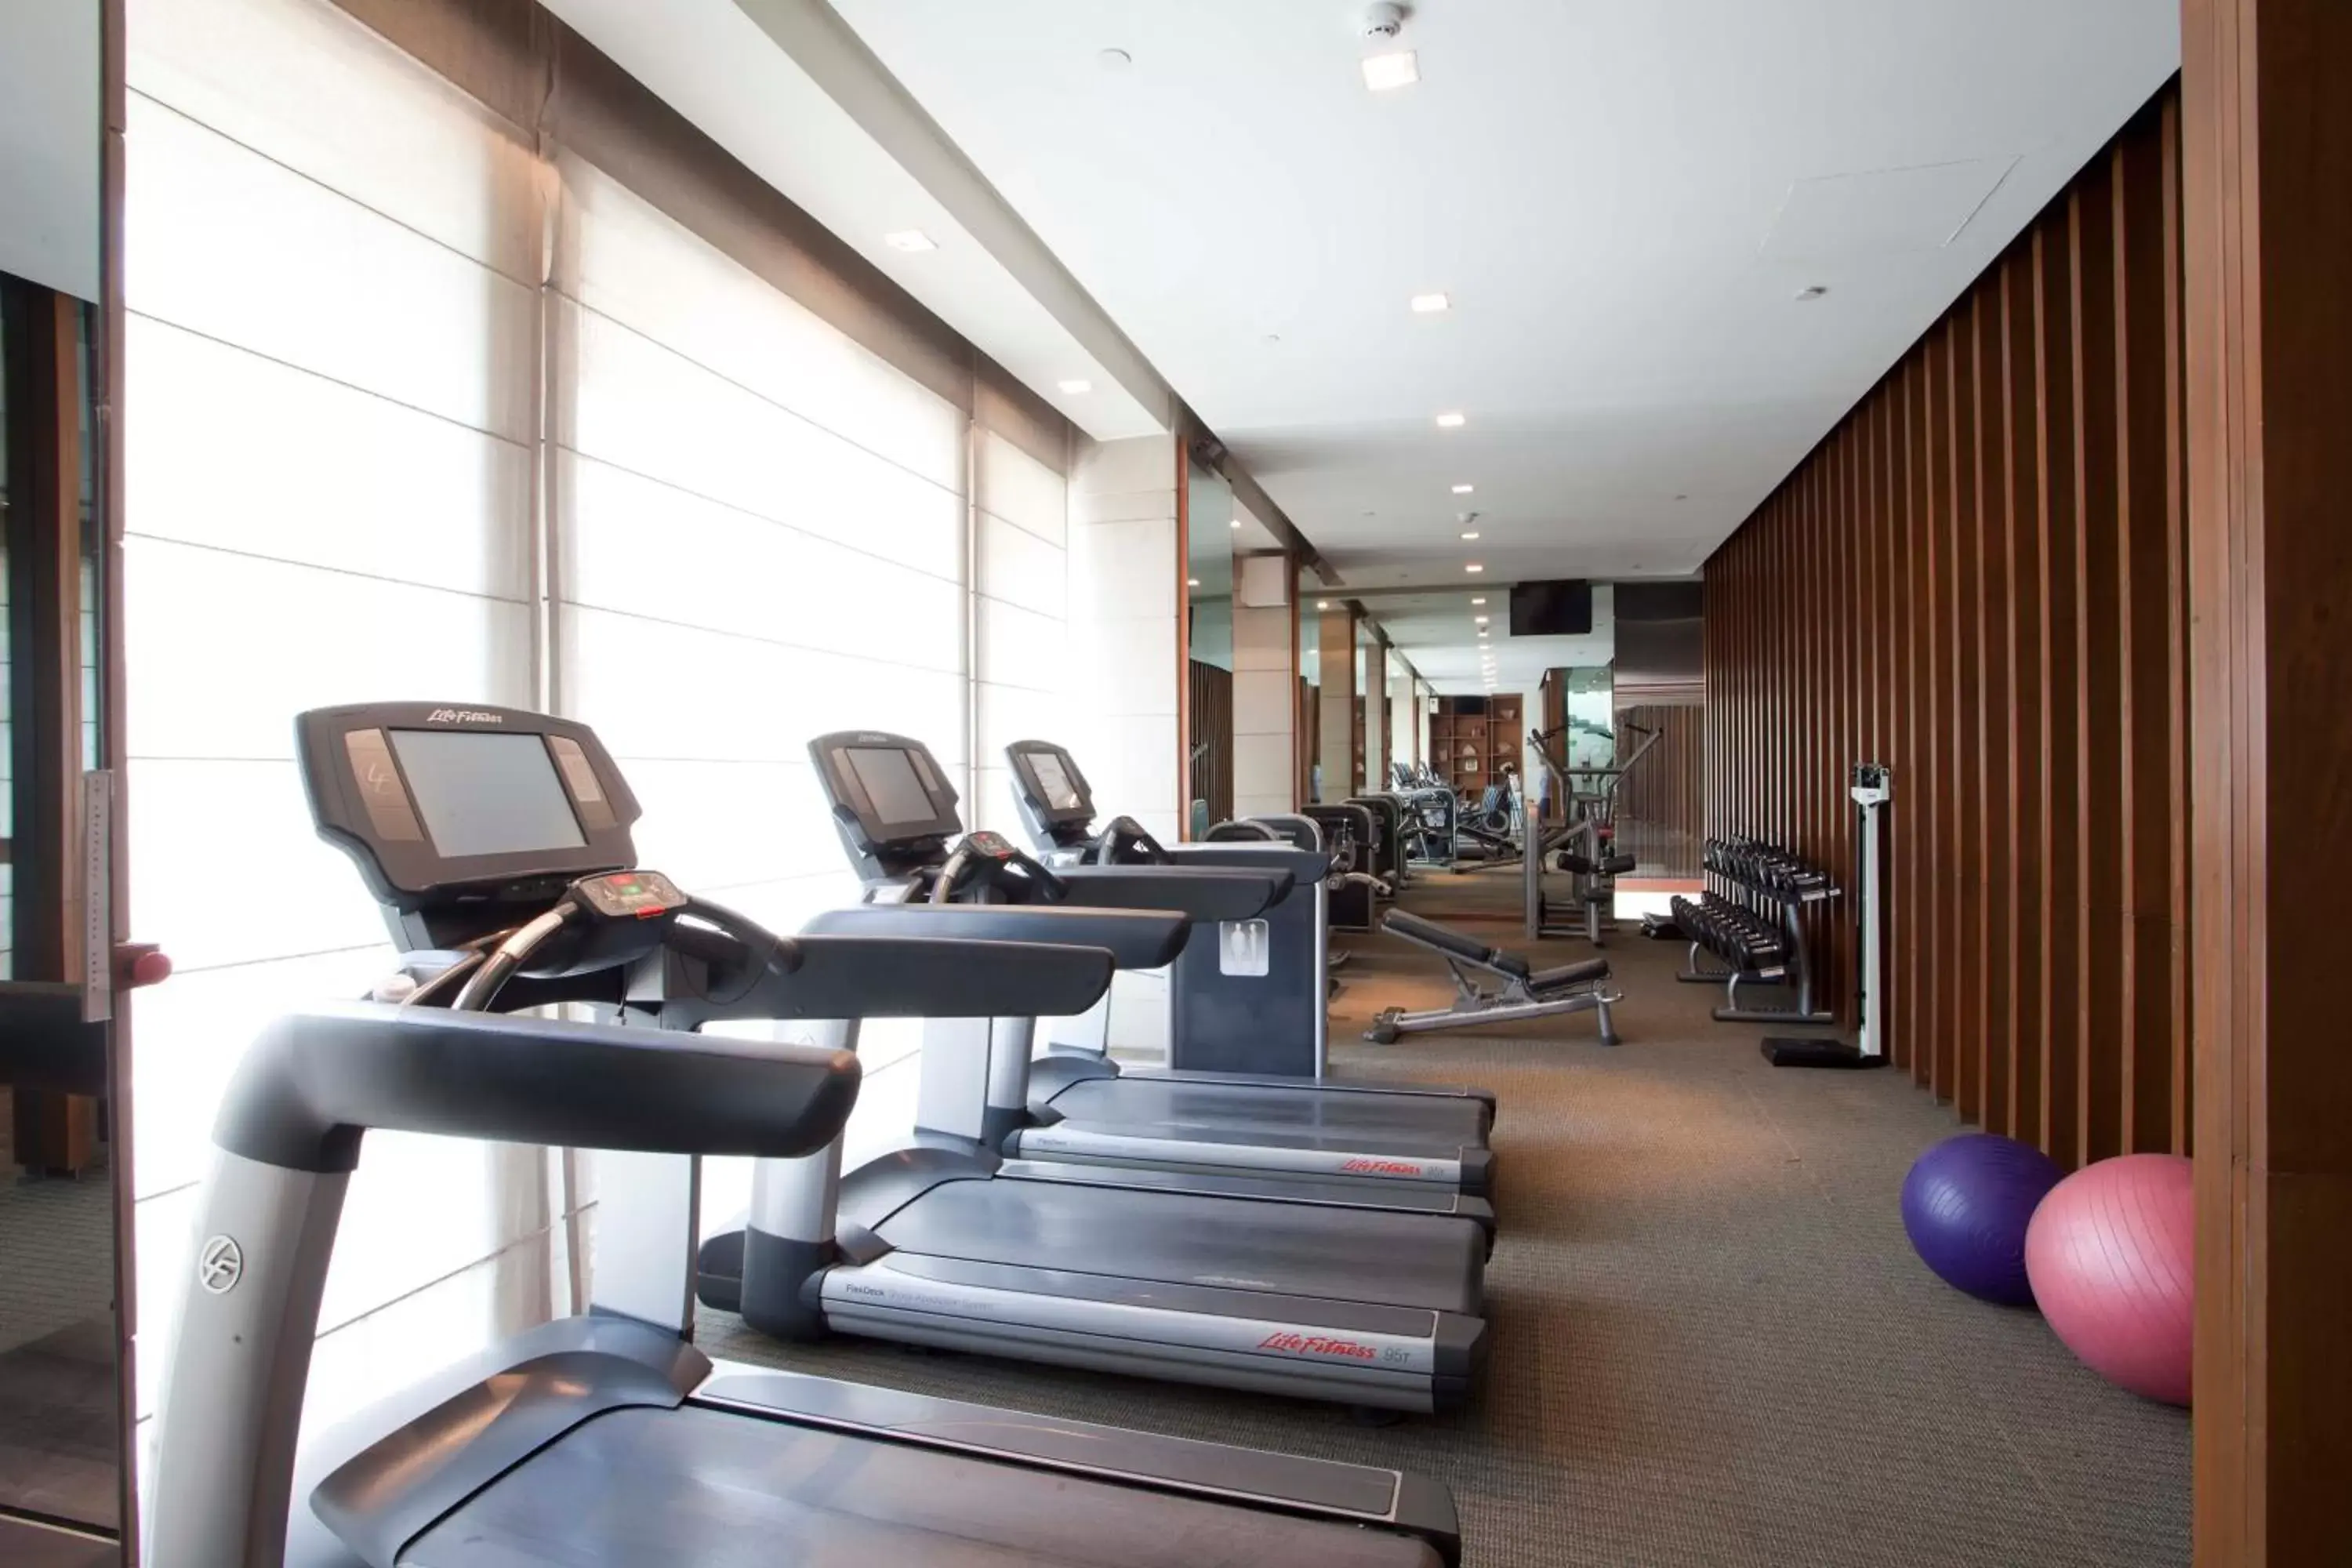 Fitness centre/facilities, Fitness Center/Facilities in Hyatt Regency Amritsar